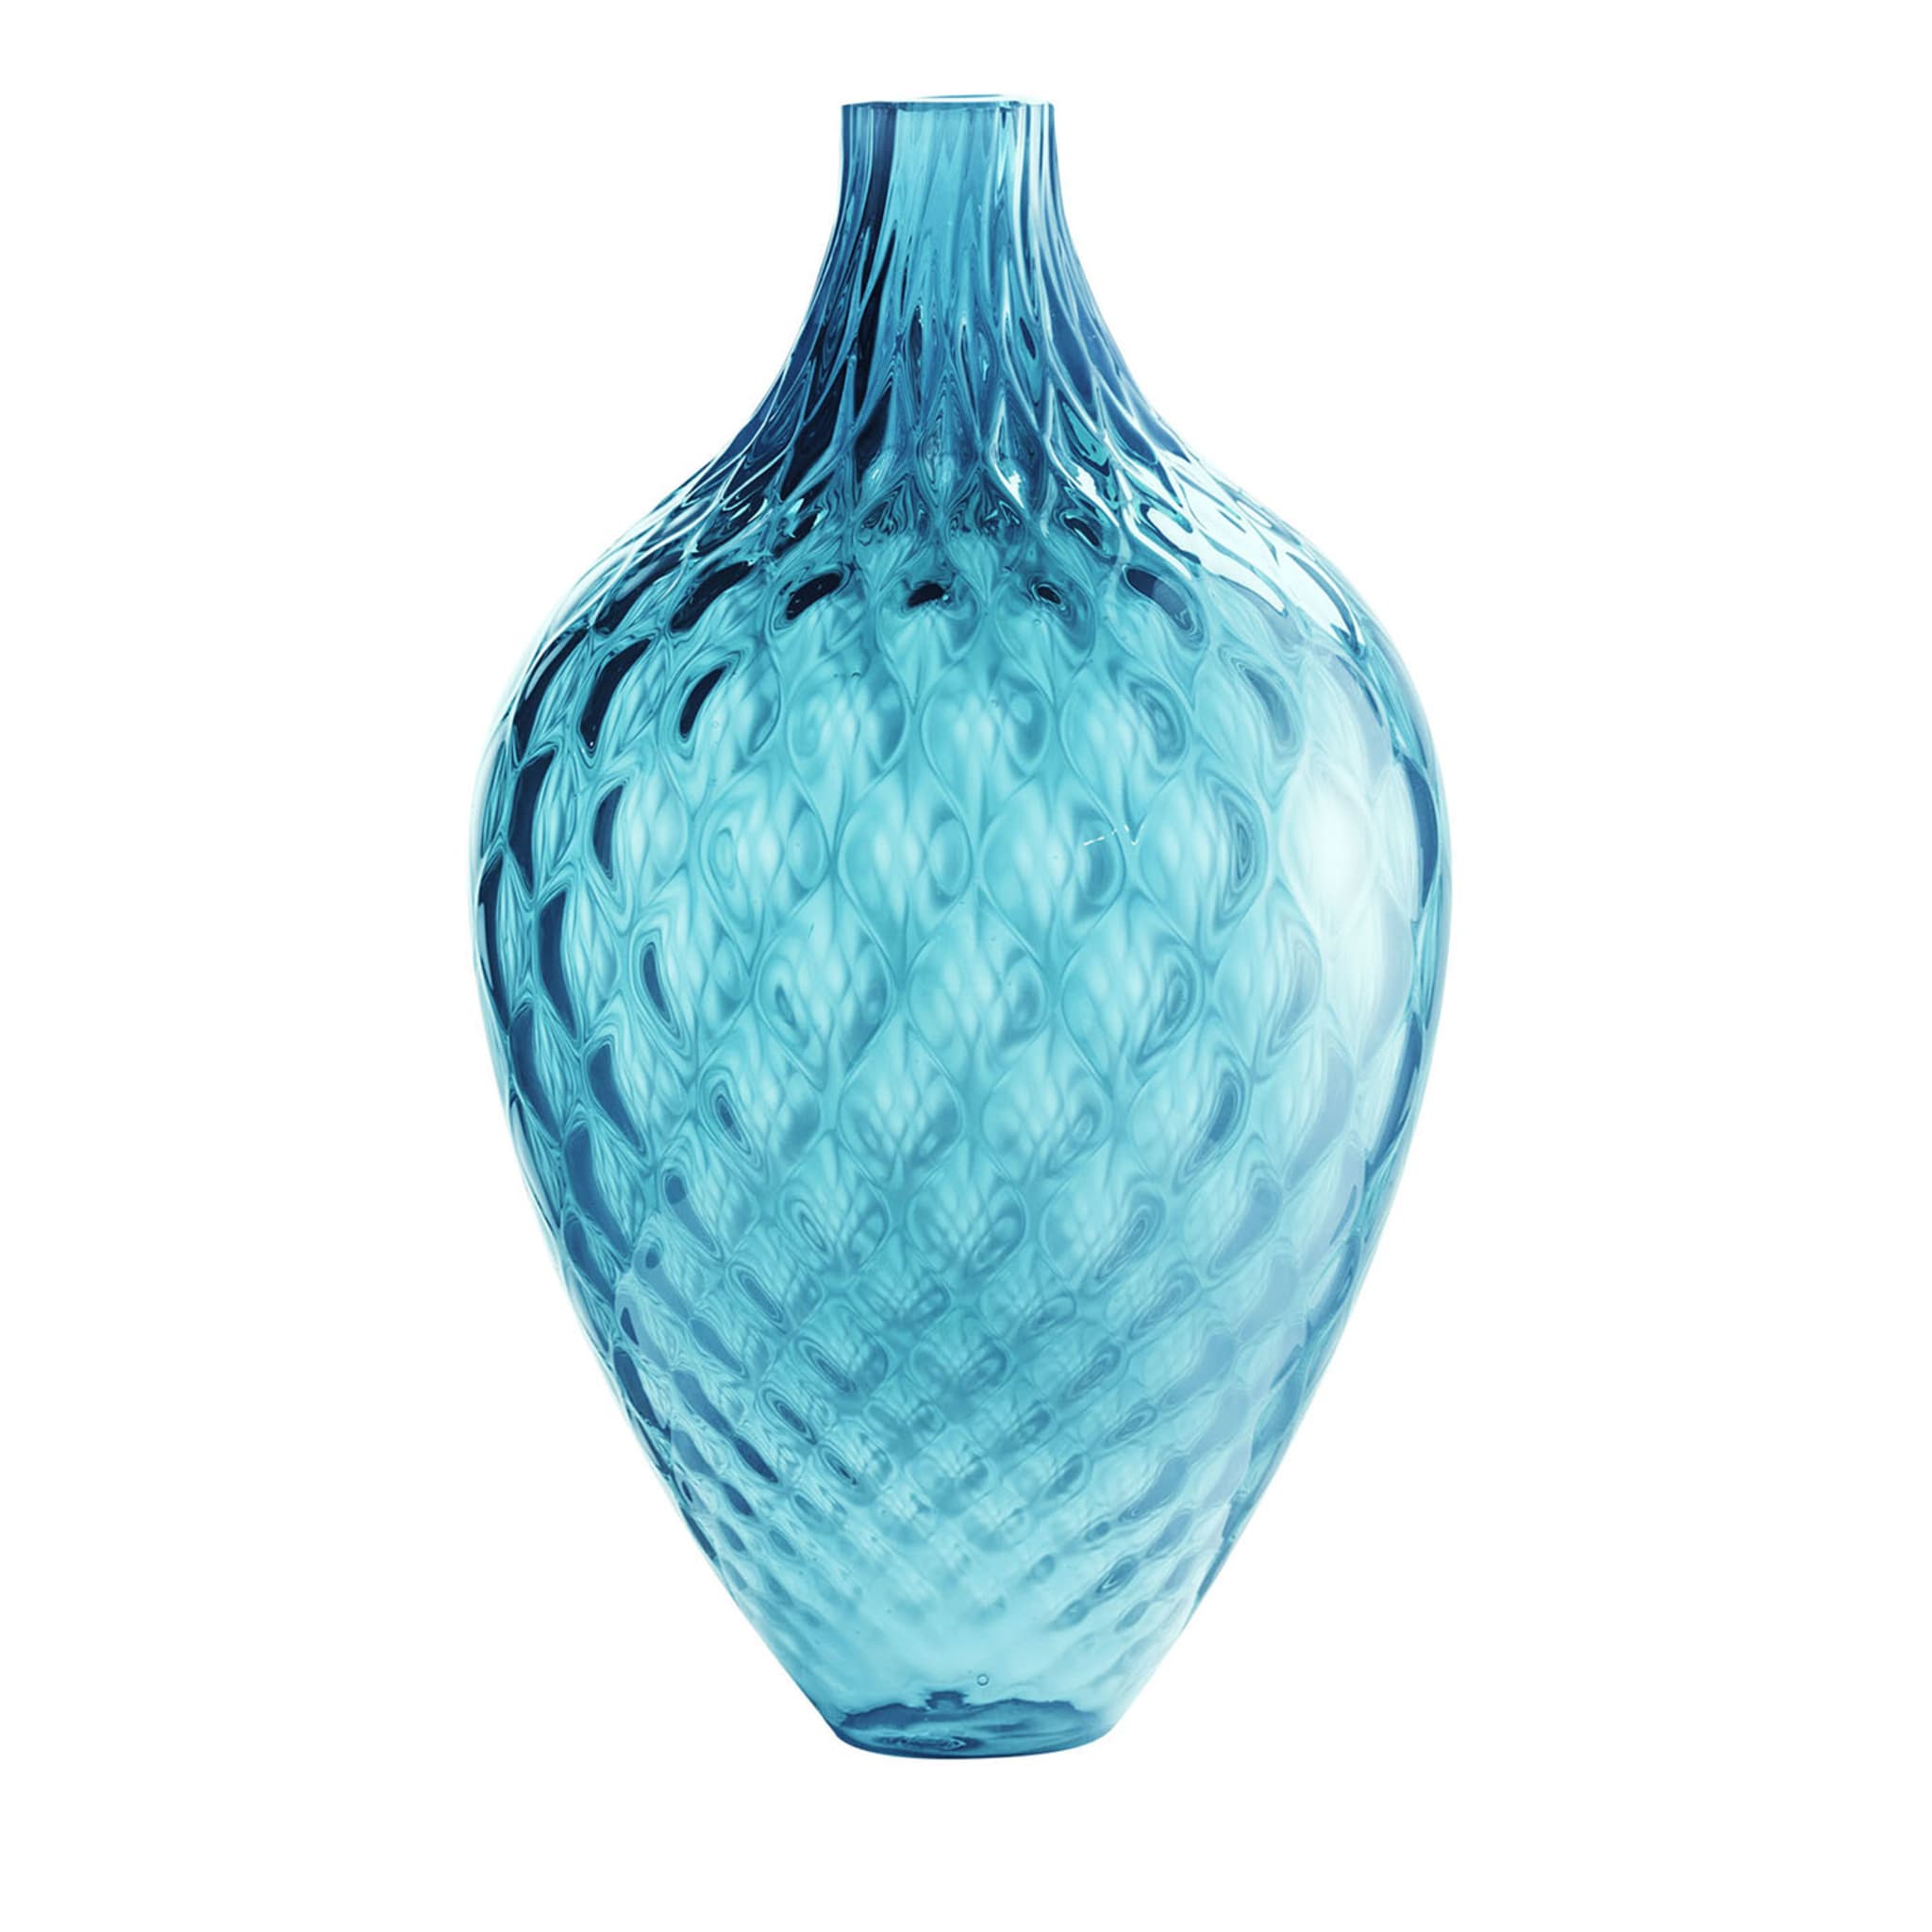 Samarcanda Tall Balloton Türkis Dekorative Vase - Hauptansicht